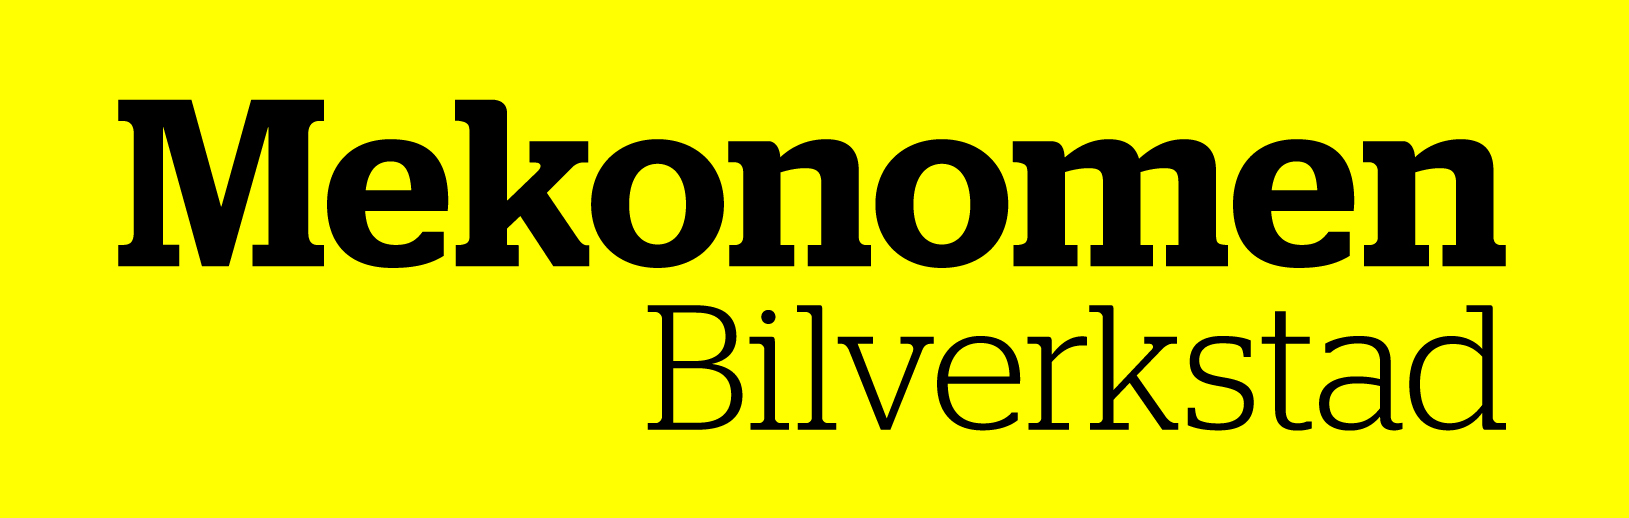 Mekonomen Frölunda - Långedrag - Godkänd Bilverkstad  logo